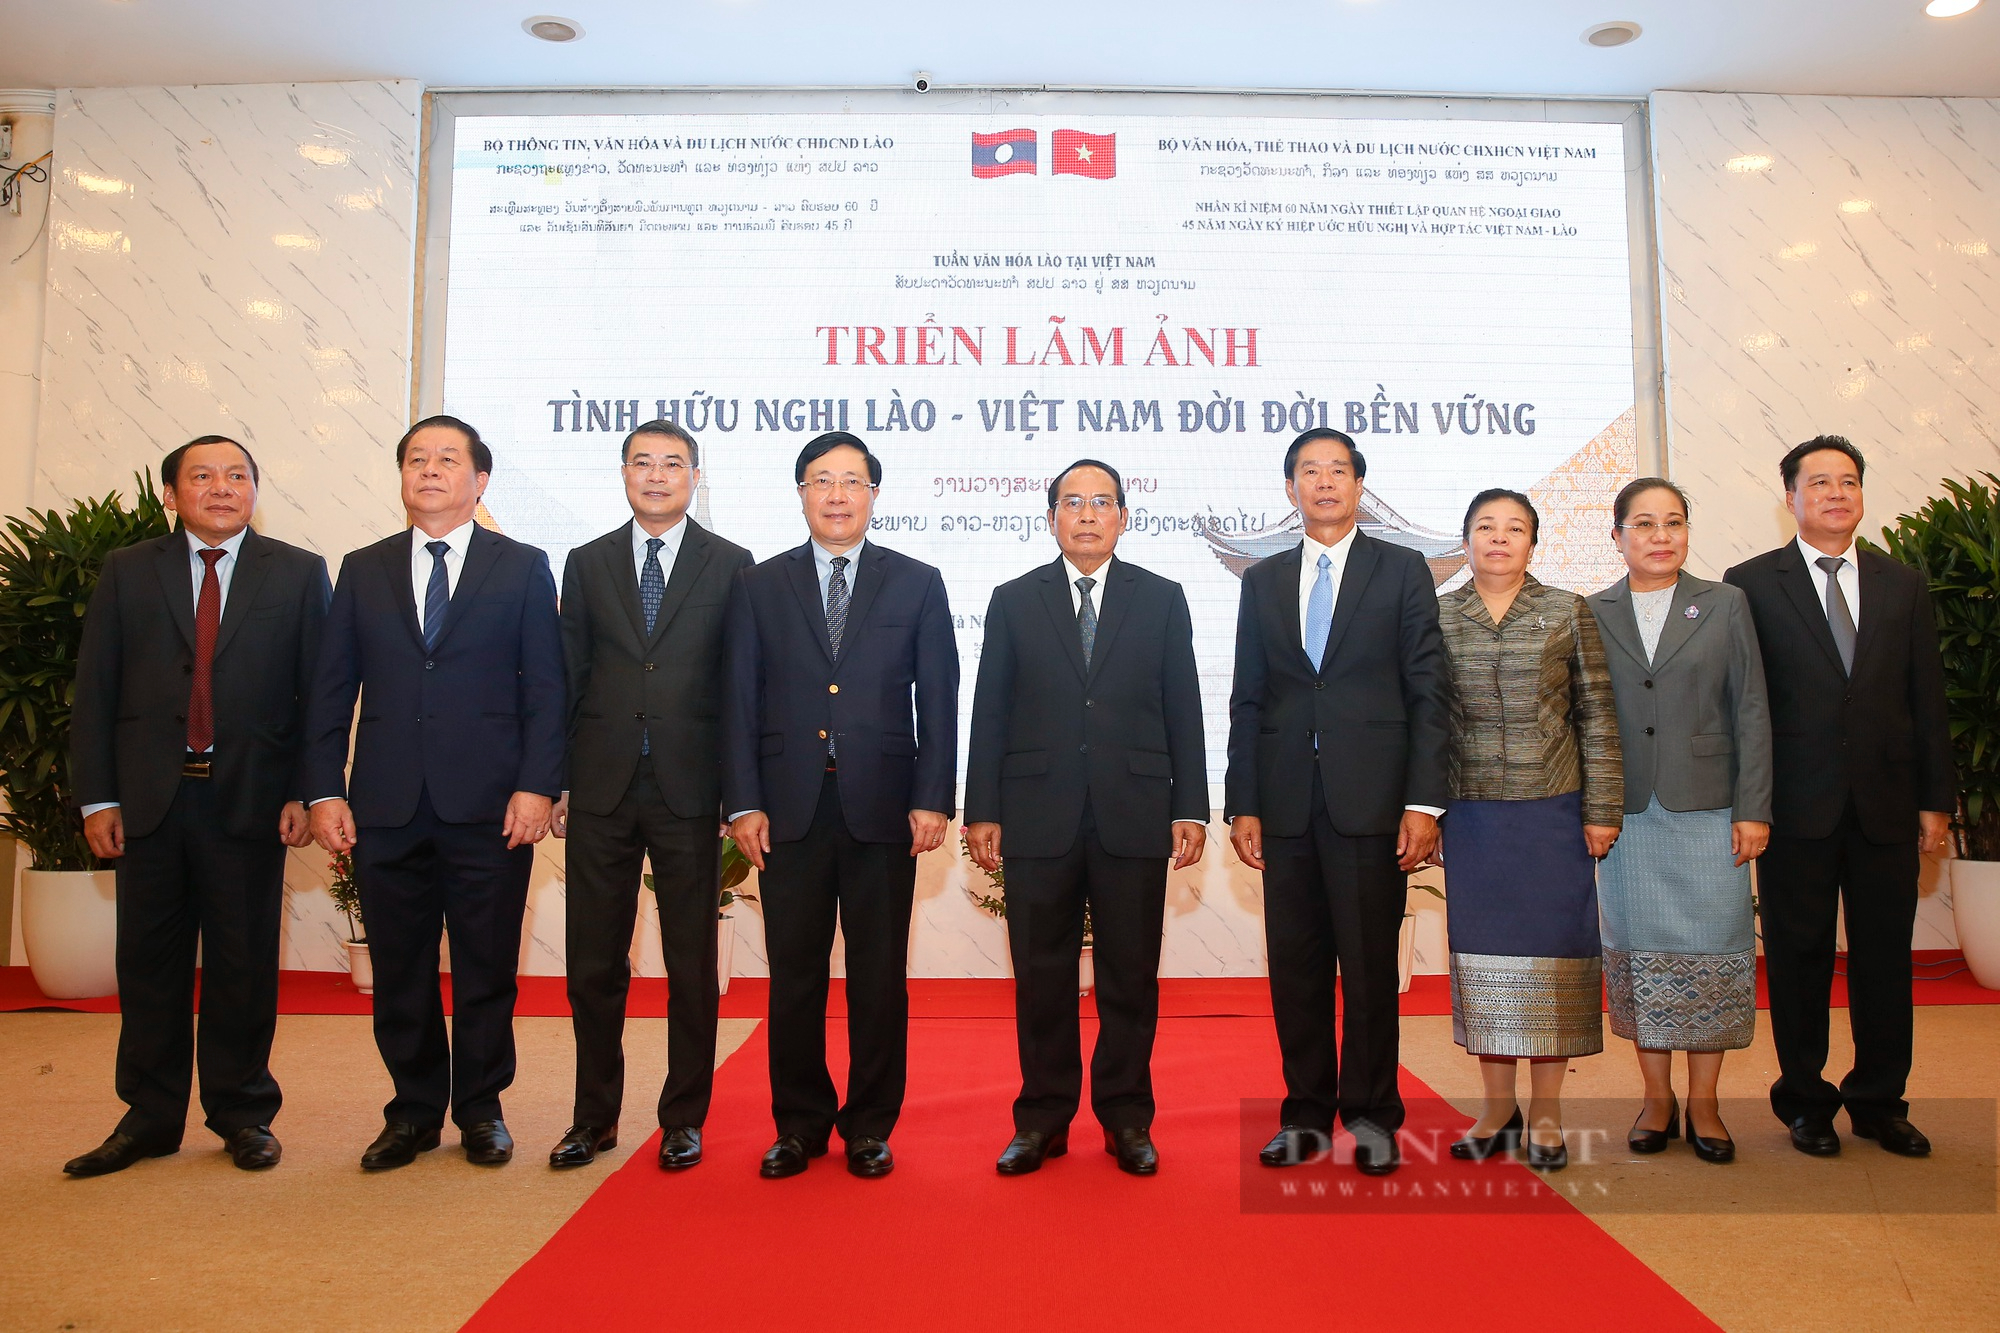 Phó Chủ tịch nước Lào dự Khai mạc triển lãm ảnh 'Tình hữu nghị Lào - Việt Nam đời đời bền vững' - Ảnh 11.